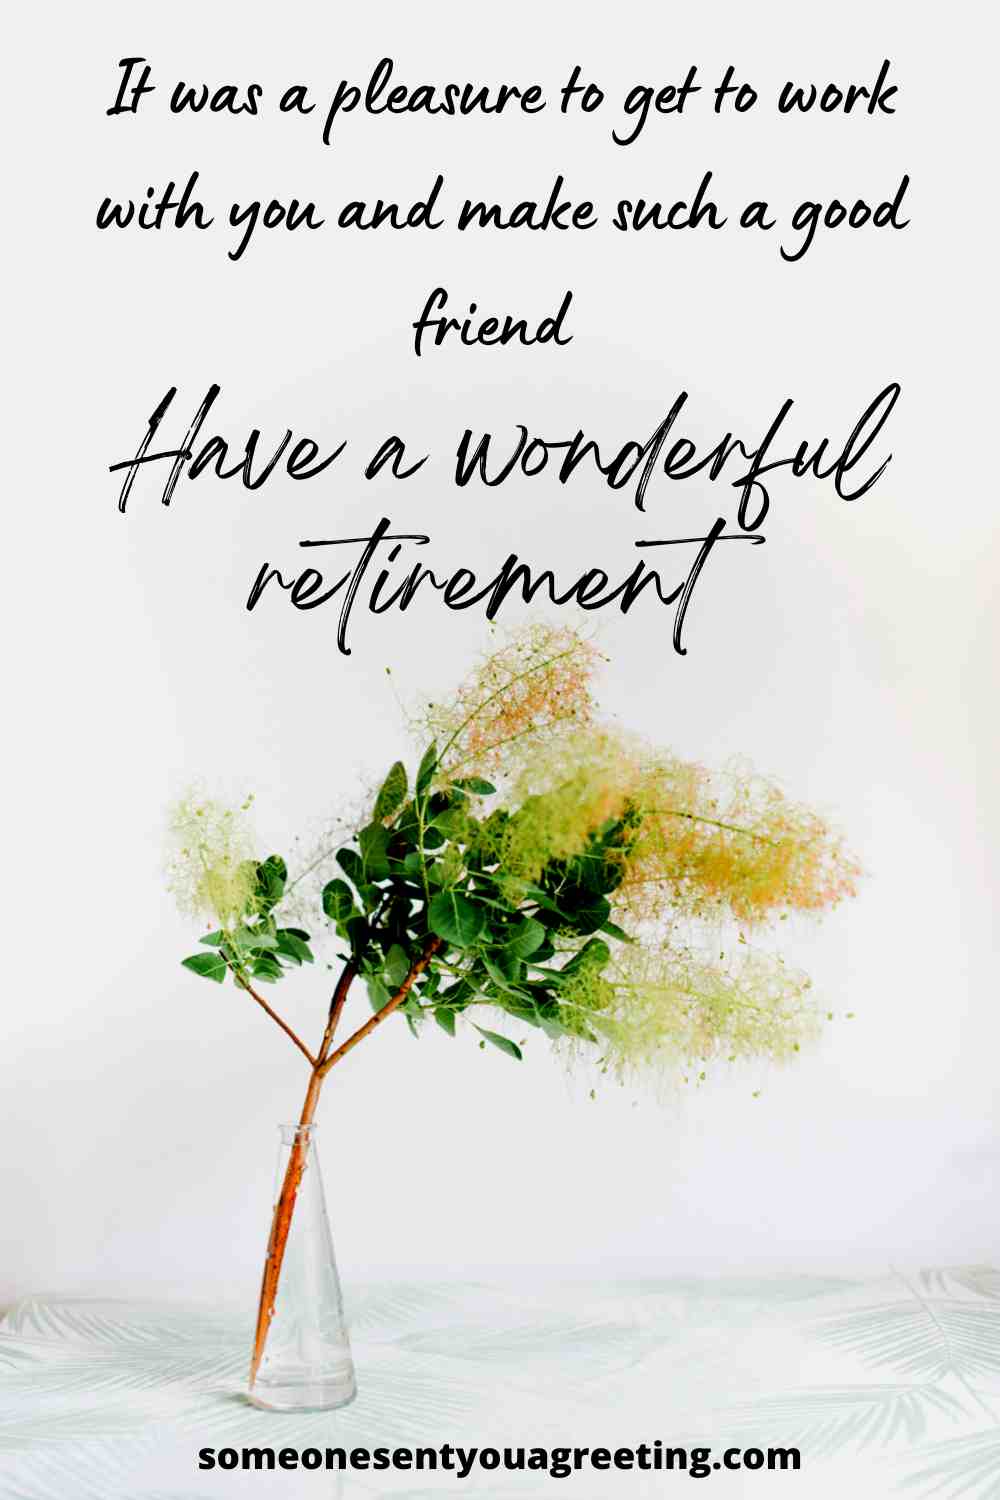 happy retirement coworker message